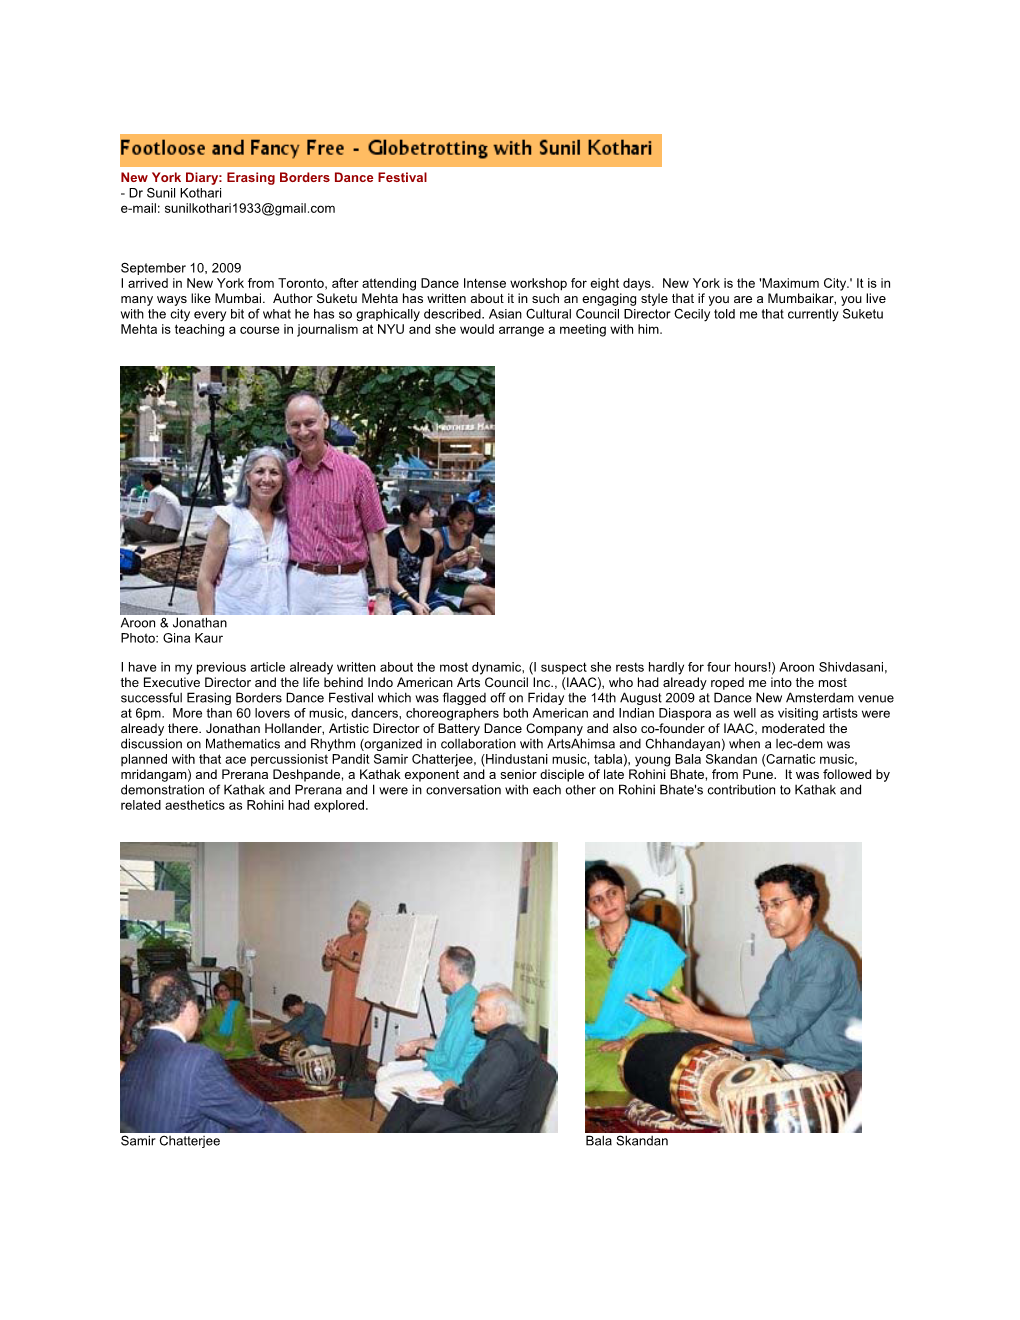 Erasing Borders Dance Festival - Dr Sunil Kothari E-Mail: Sunilkothari1933@Gmail.Com